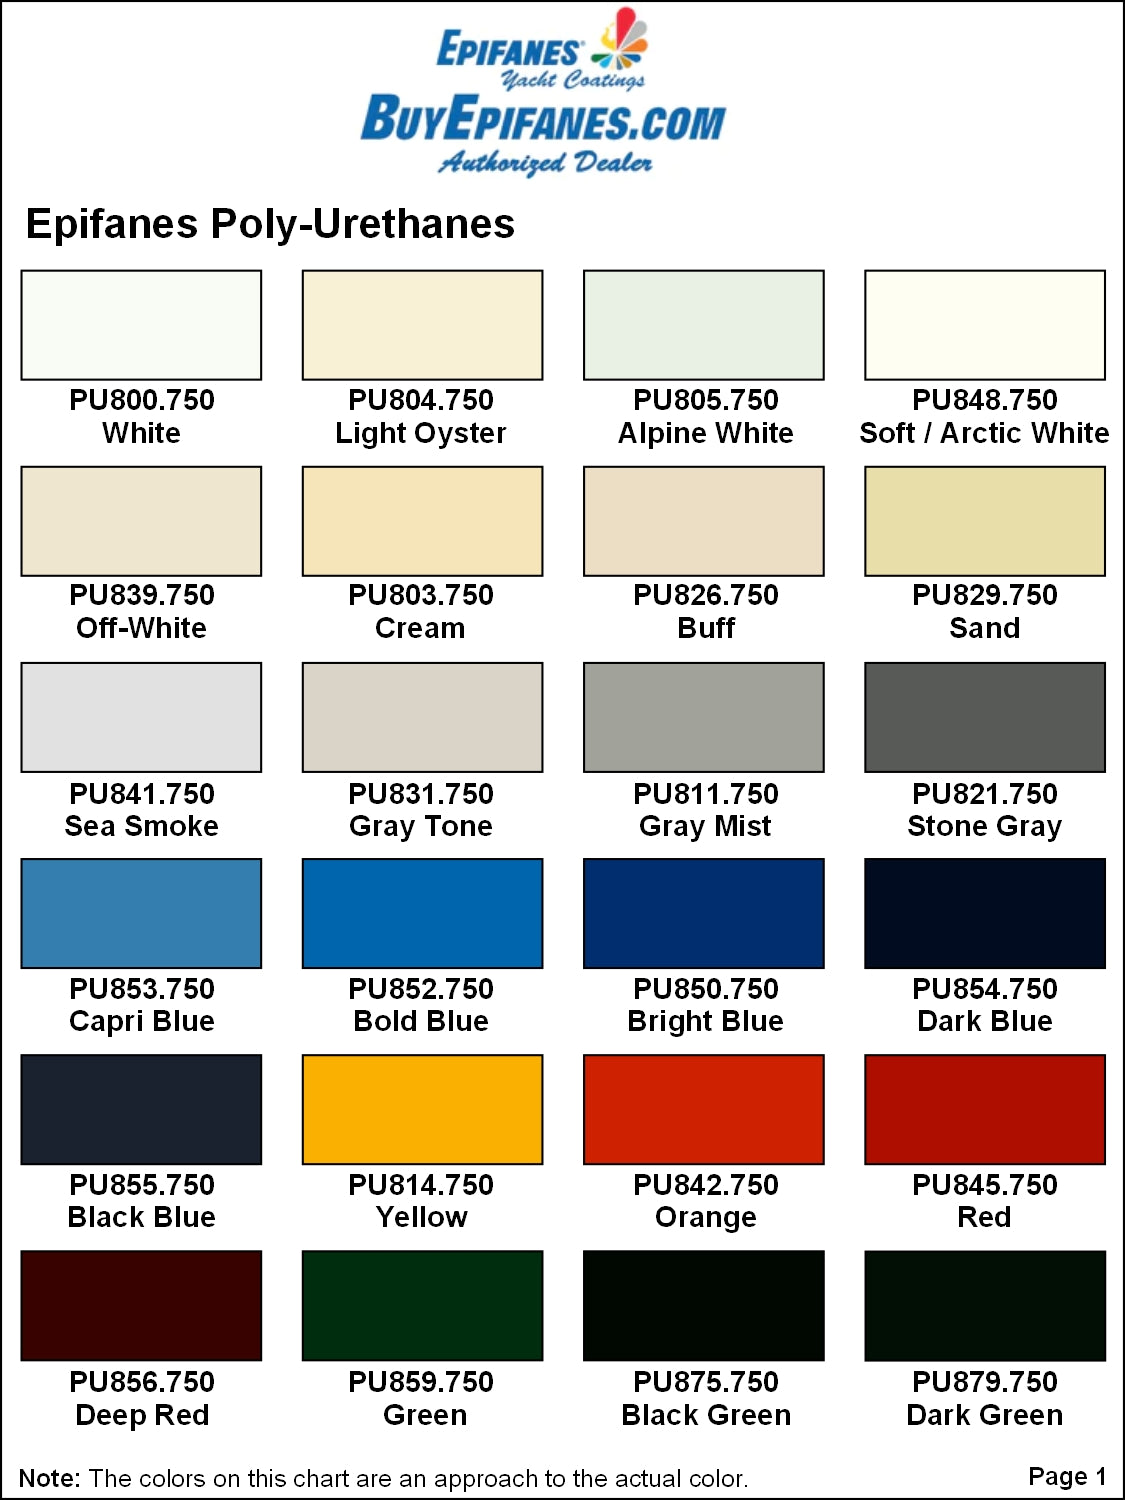 BuyEpifanes.com Epifanes Poly-urethane Color Chart, V1